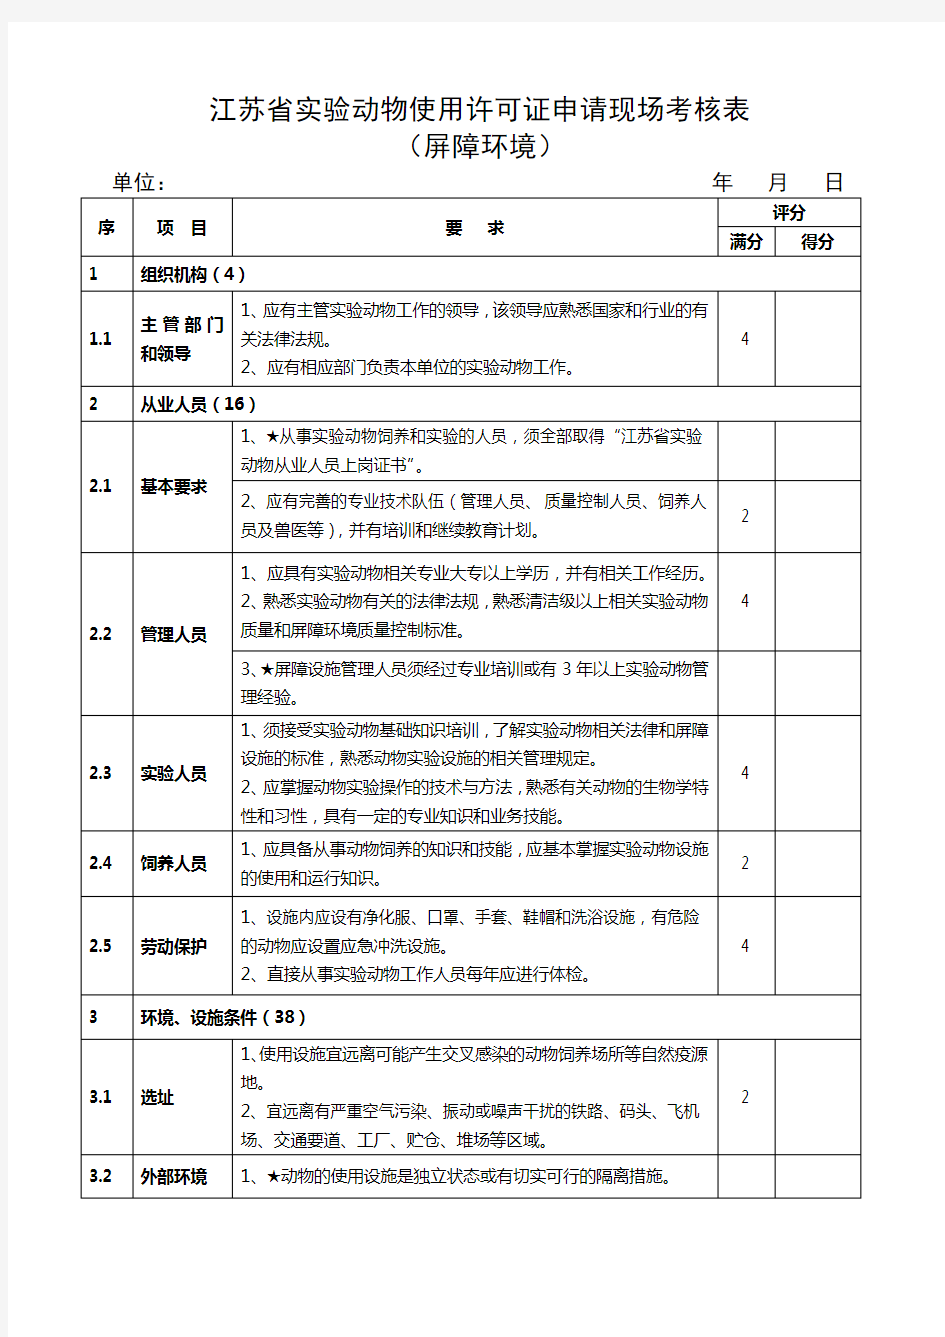 江苏省实验动物生产许可证申请现场考核表